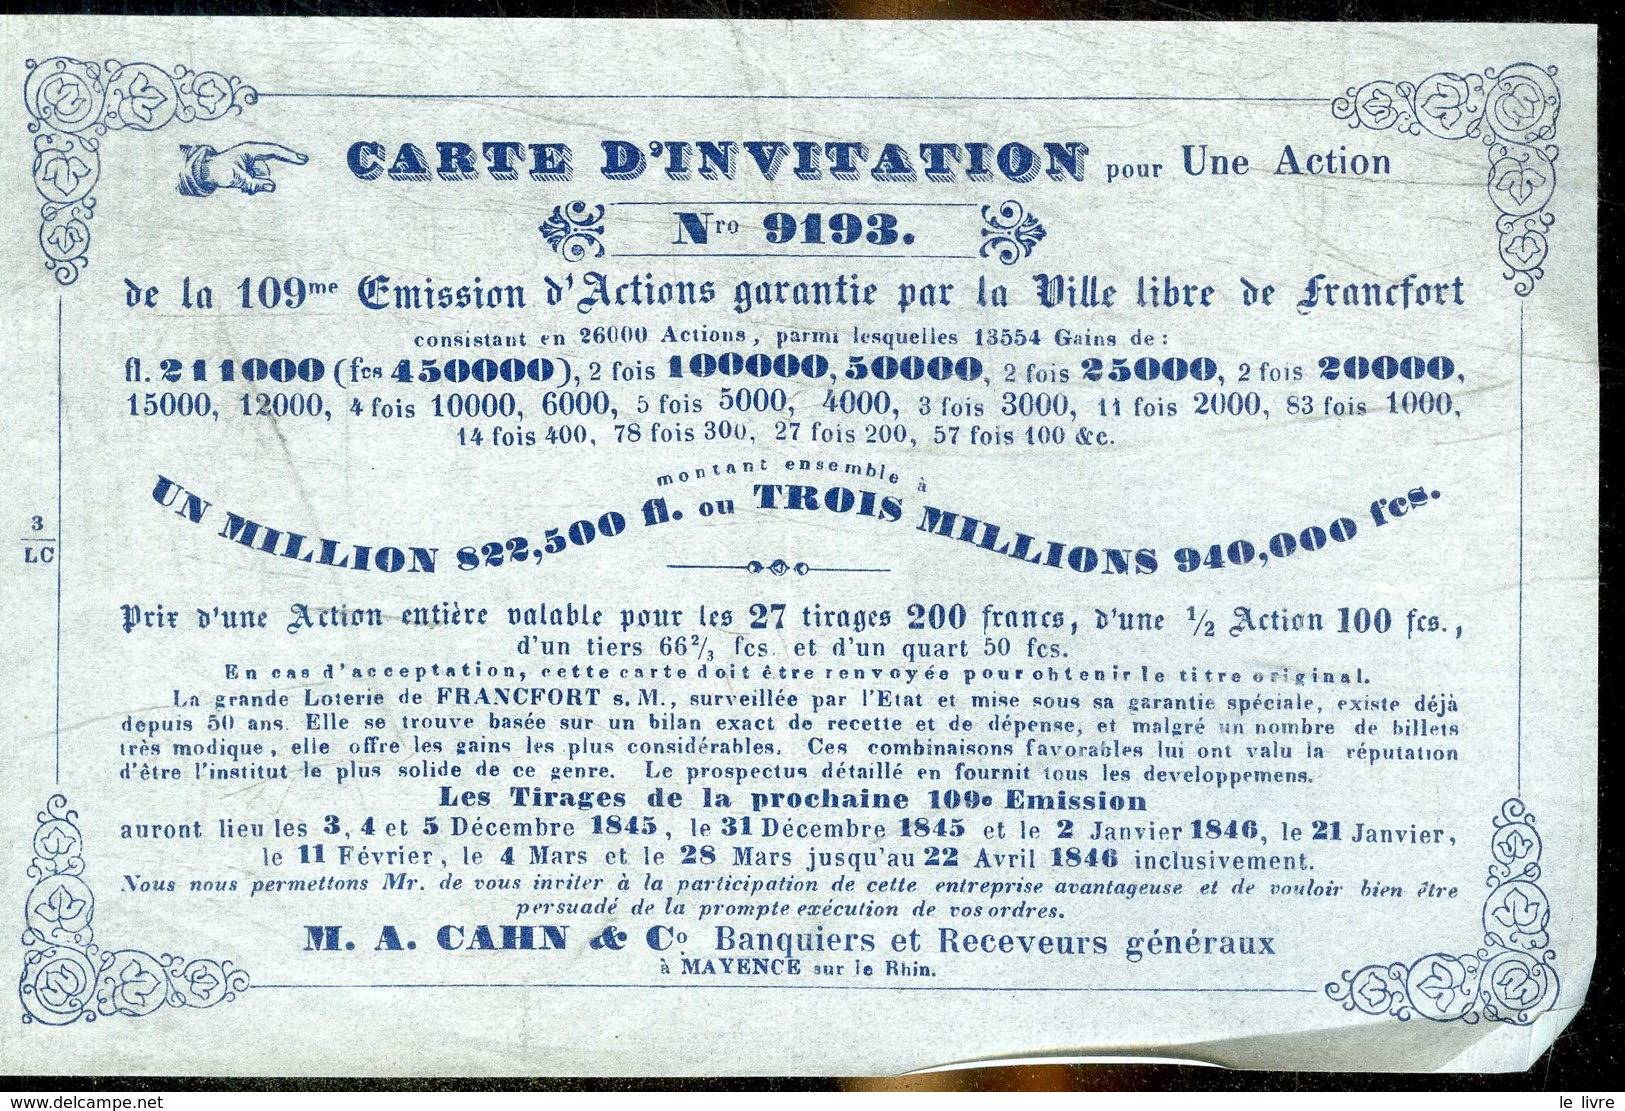 VILLE LIBRE DE FRANCFORT. CERTIFICATION D'INVITATION POUR UNE ACTION. TIRAGES DE 1845 ET 1846